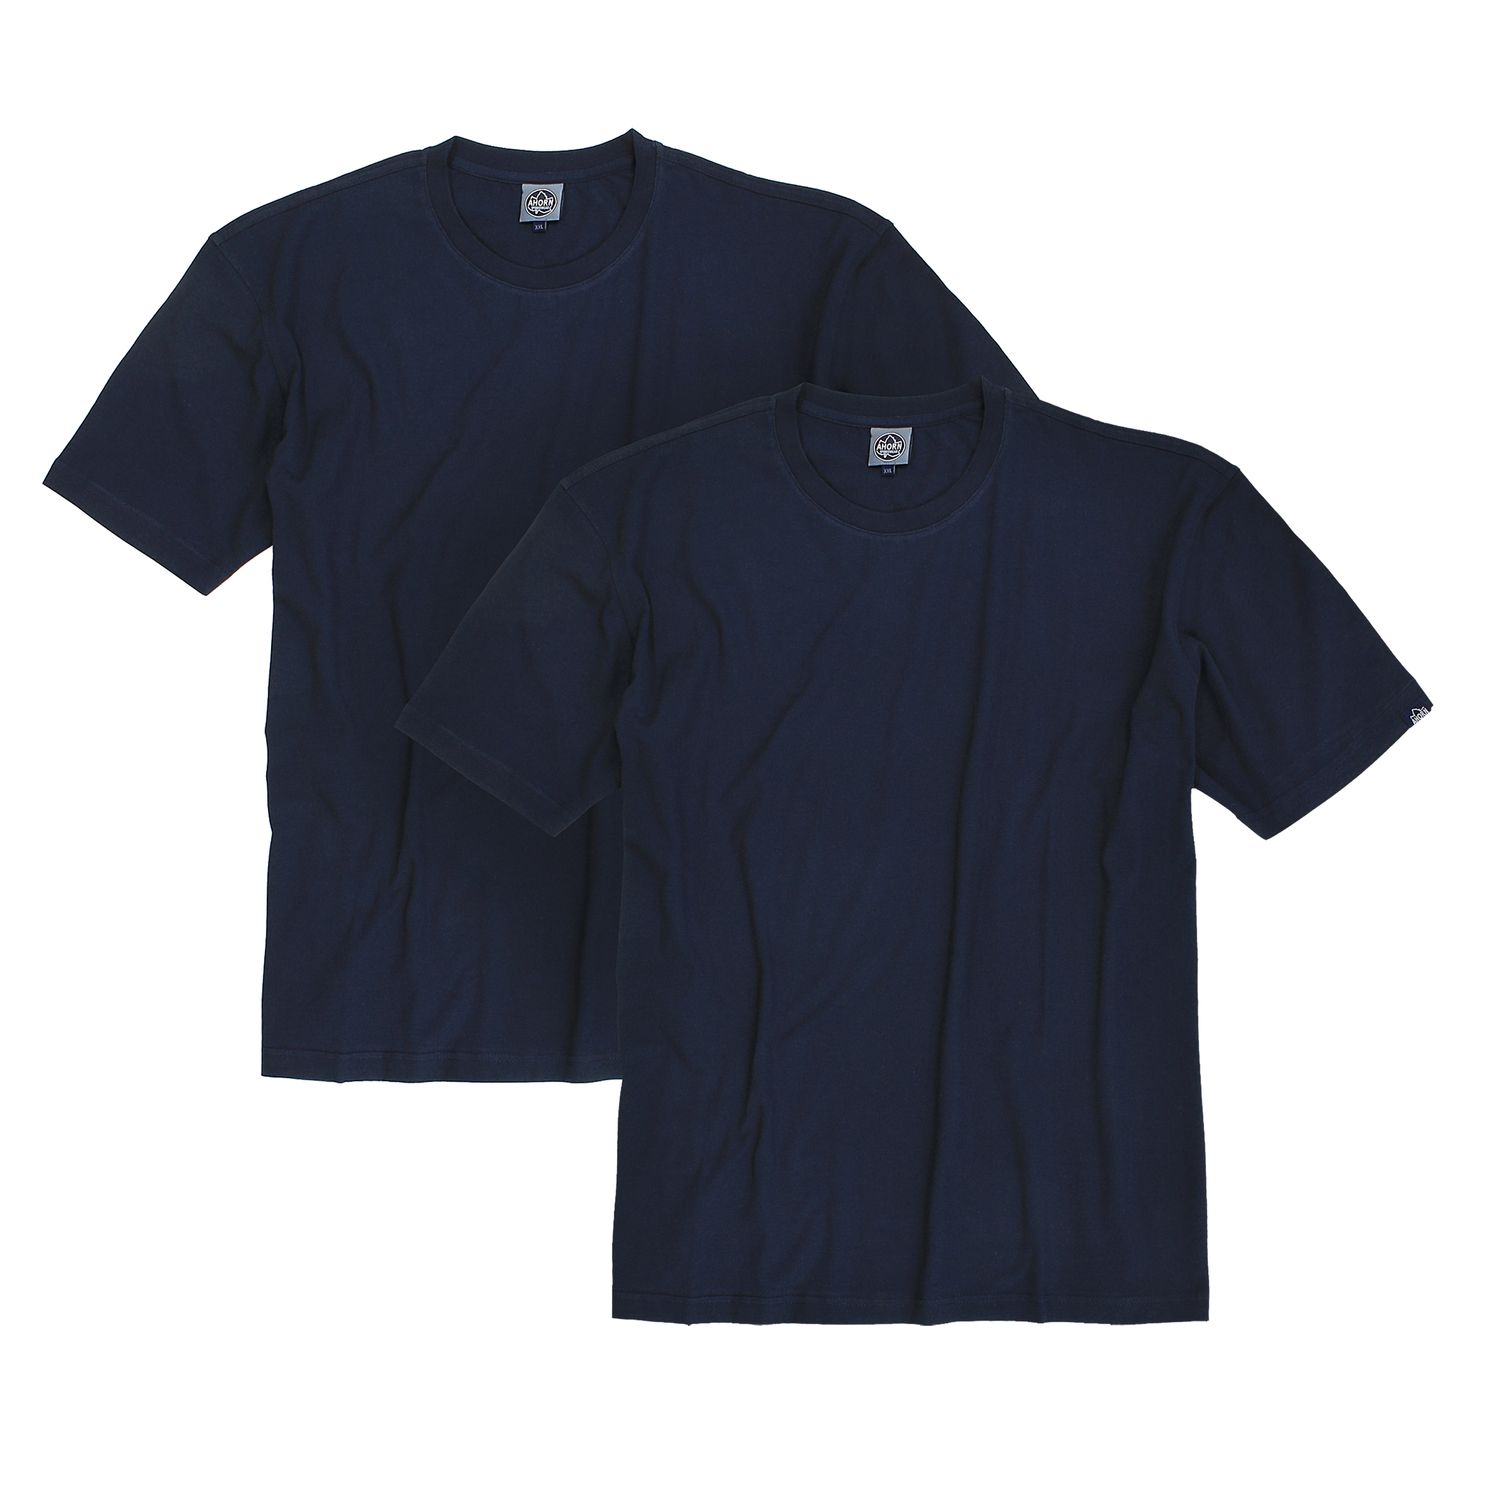 T-shirt bleu foncé col rond -emballage double- by Ahorn Sportswear grandes tailles jusqu'au 10XL